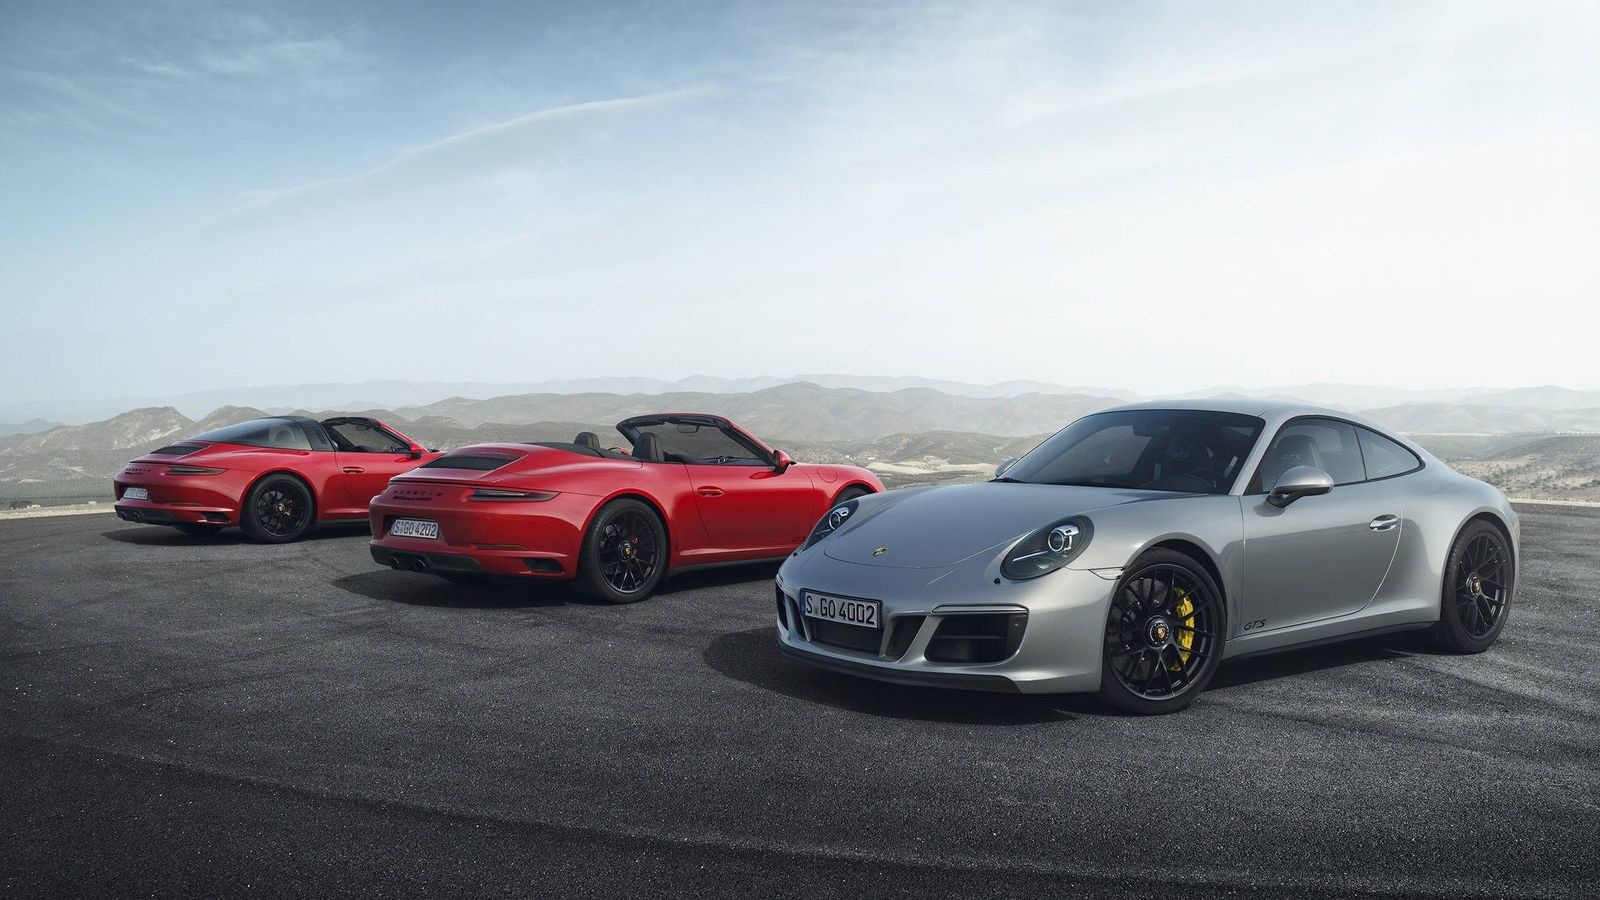 Foto: Gama Porsche 911 GTS al completo